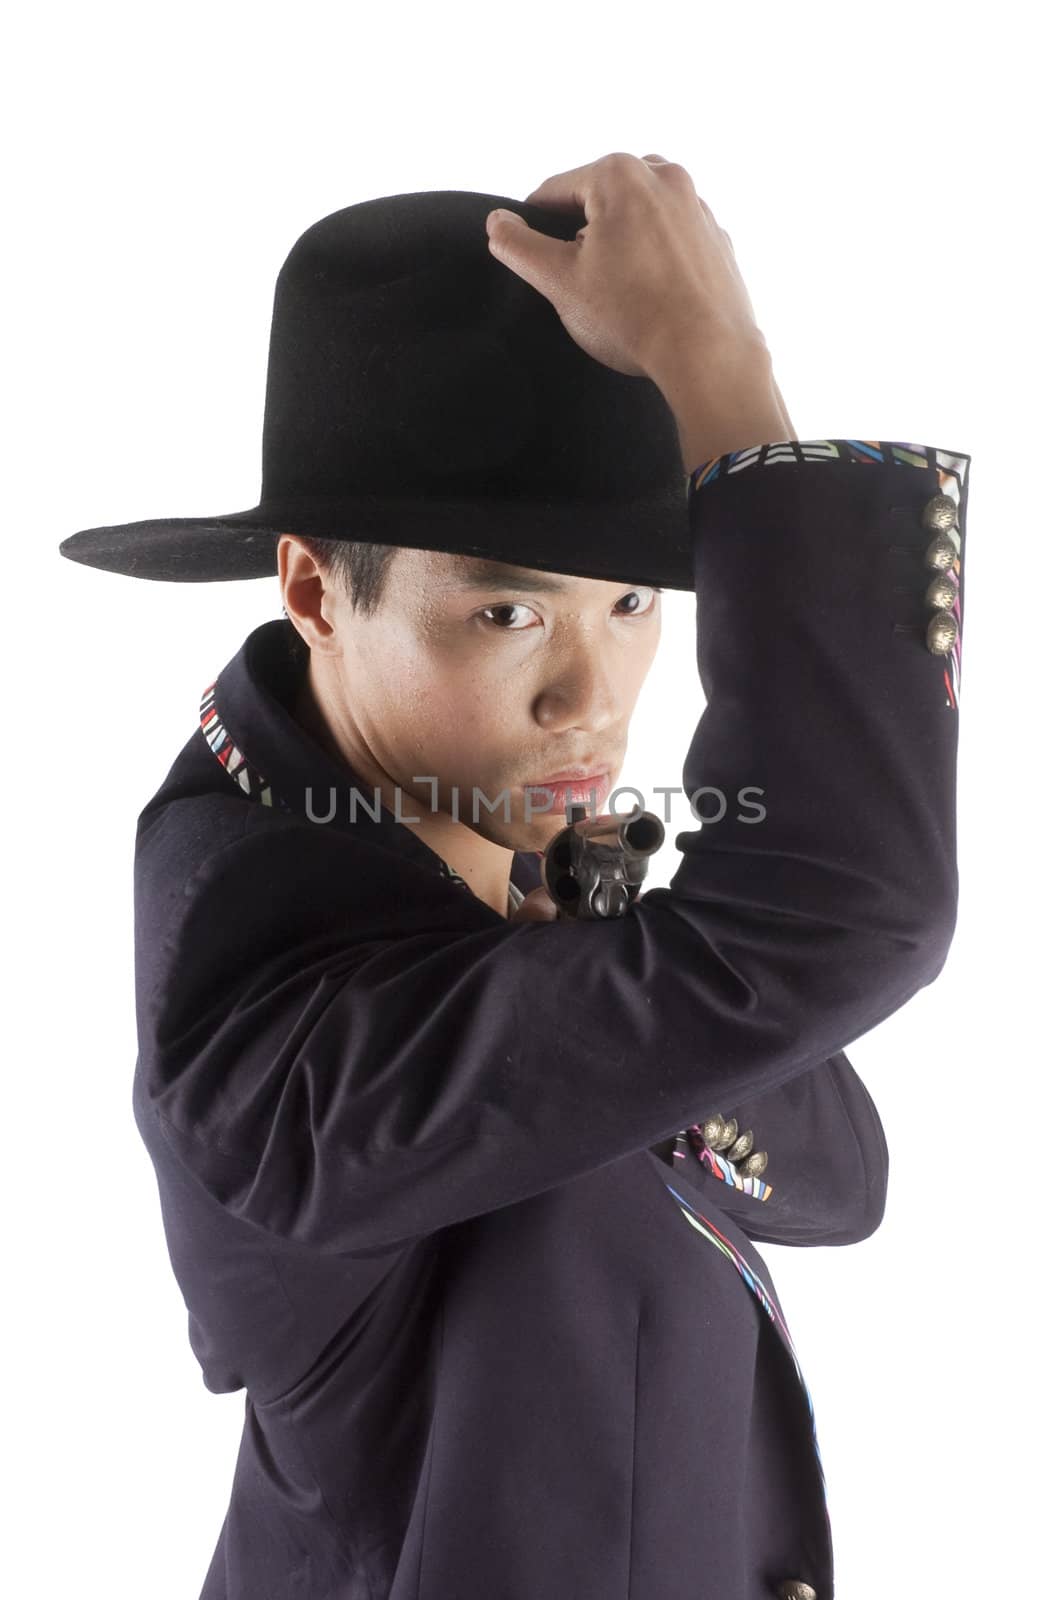 Asian cowboy pointing gun at viewer